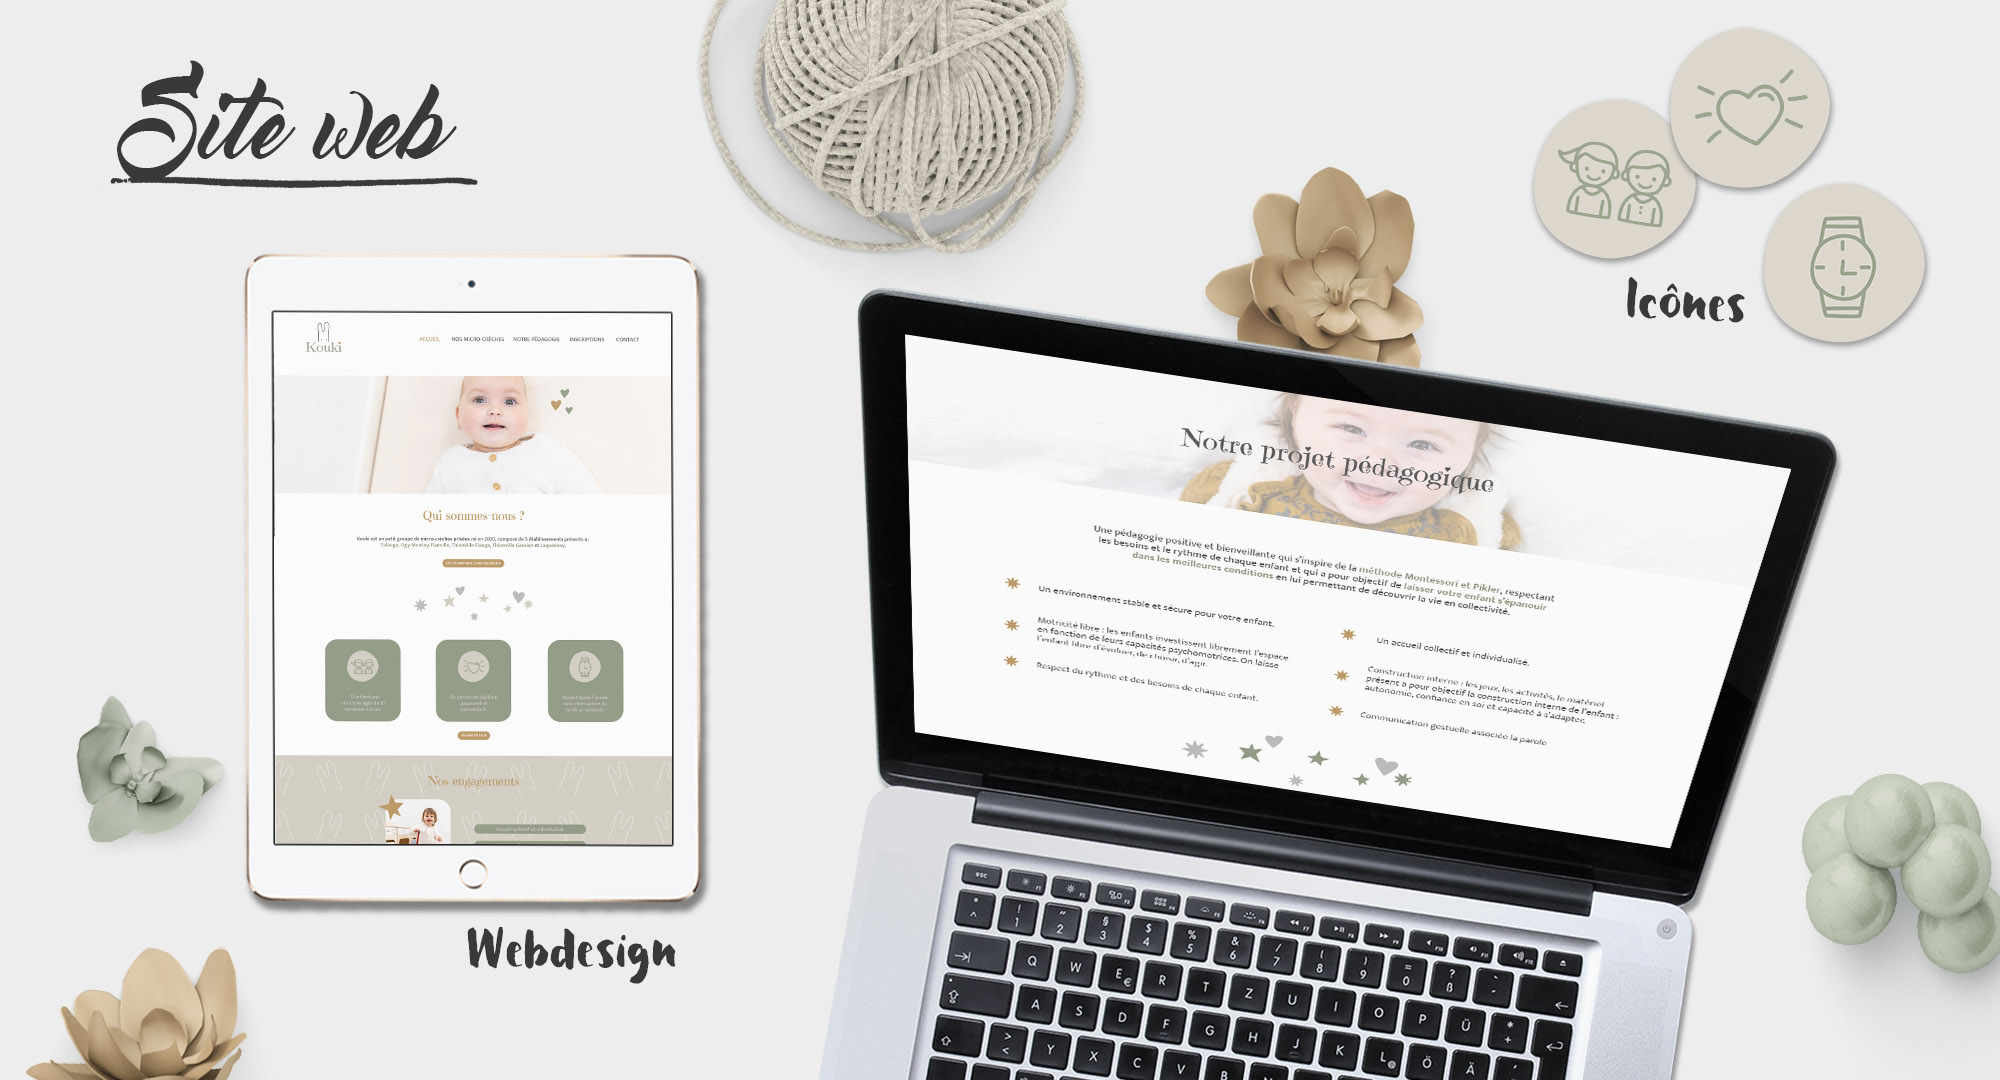 Webdesign - Design application - Enfants - Monster Messenger